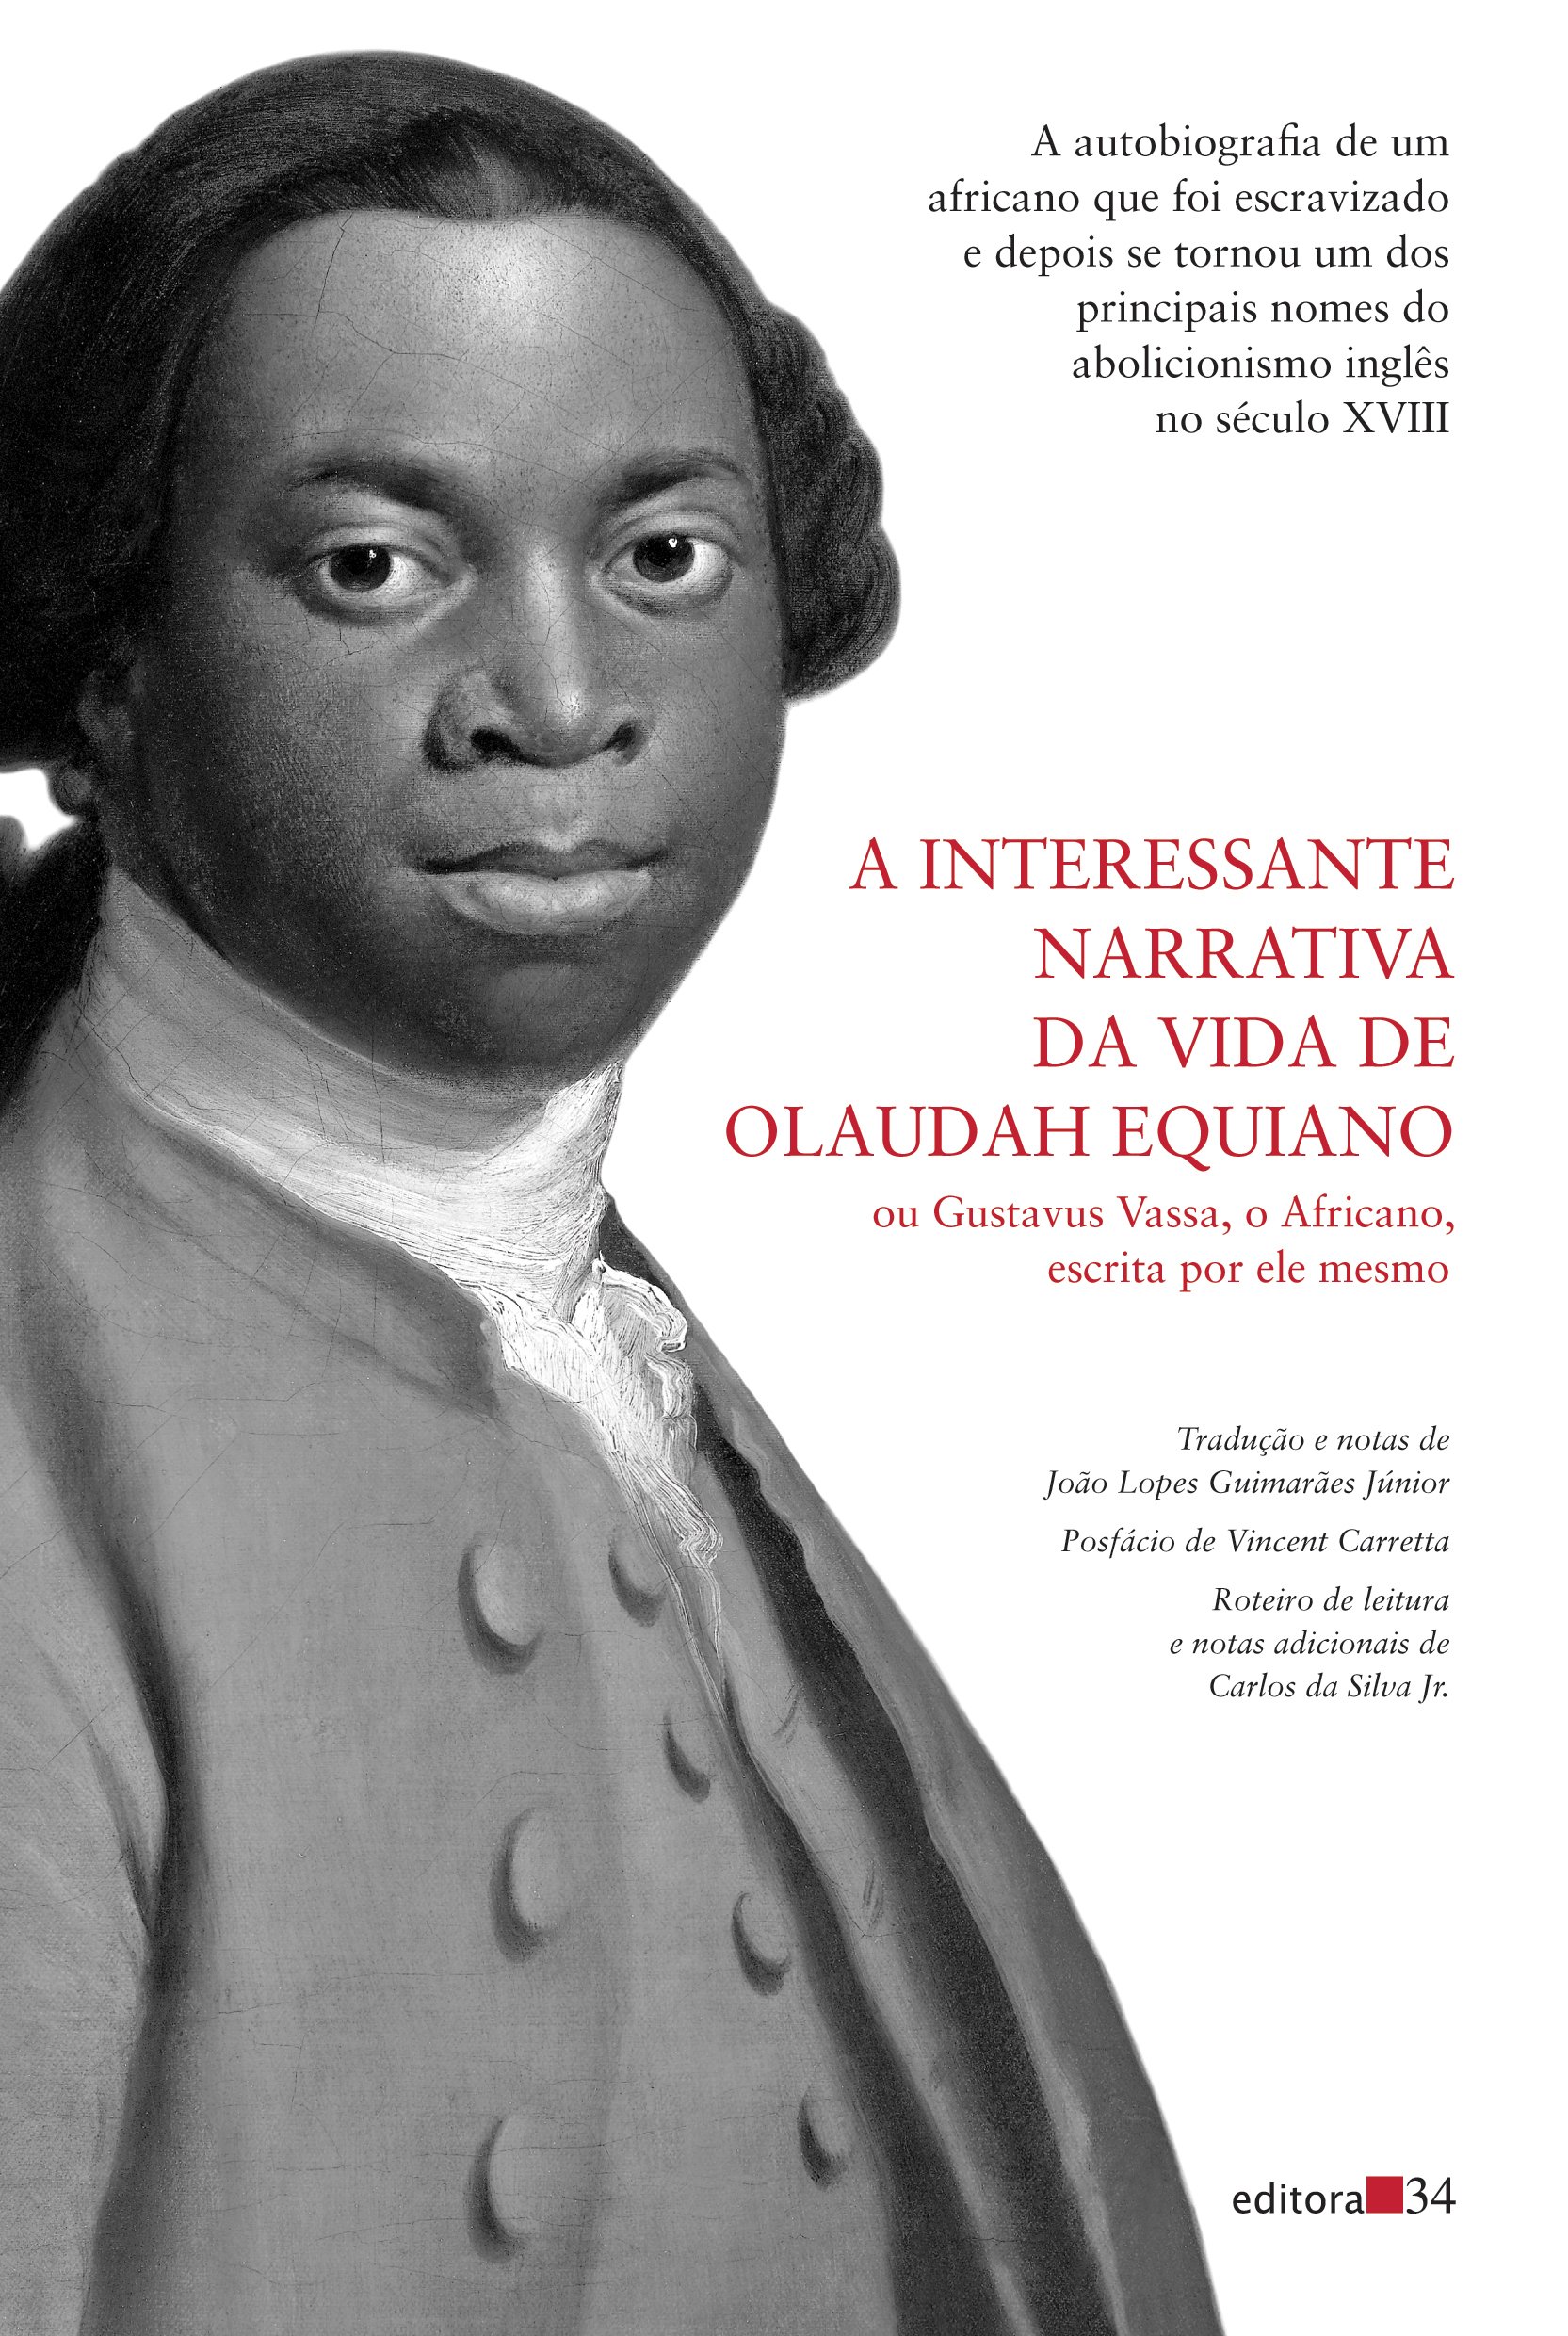 A interessante narrativa da vida de Olaudah Equiano, livro de Olaudah Equiano